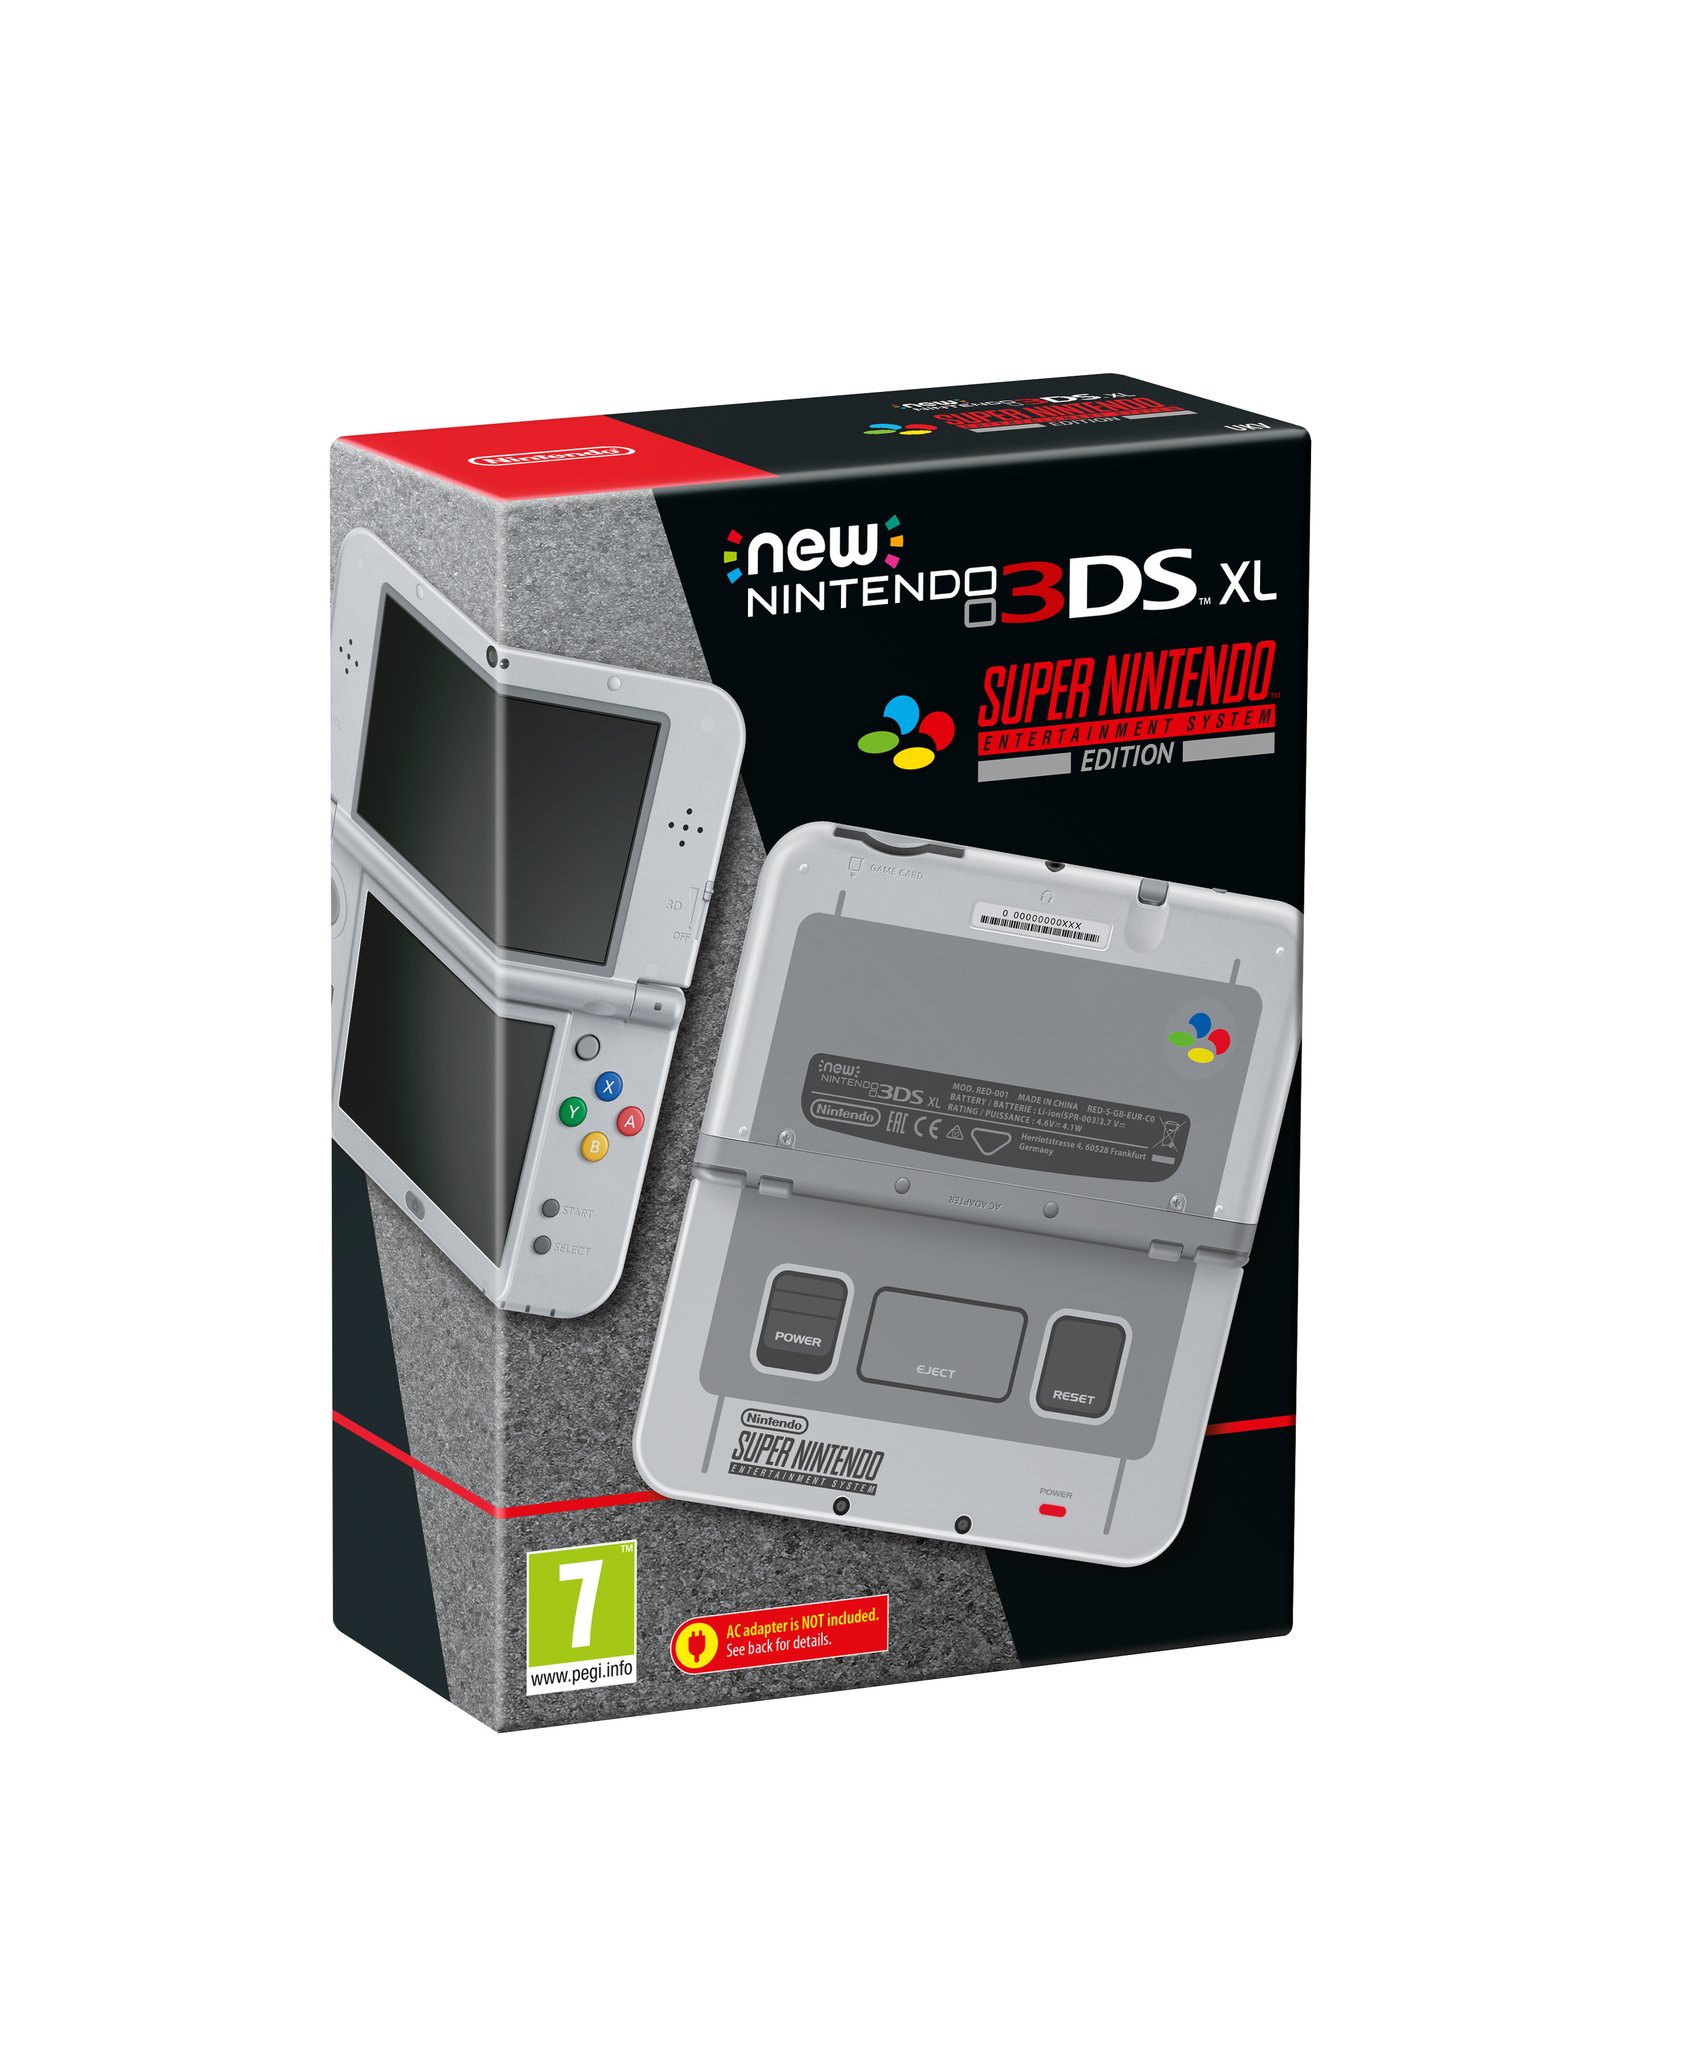 Immagine pubblicata in relazione al seguente contenuto: Nintendo annuncia la console 3DS XL Super Nintendo Entertainment System Edition | Nome immagine: news26901_3DS-XL-Super-Nintendo-Entertainment-System-Edition_1.jpg